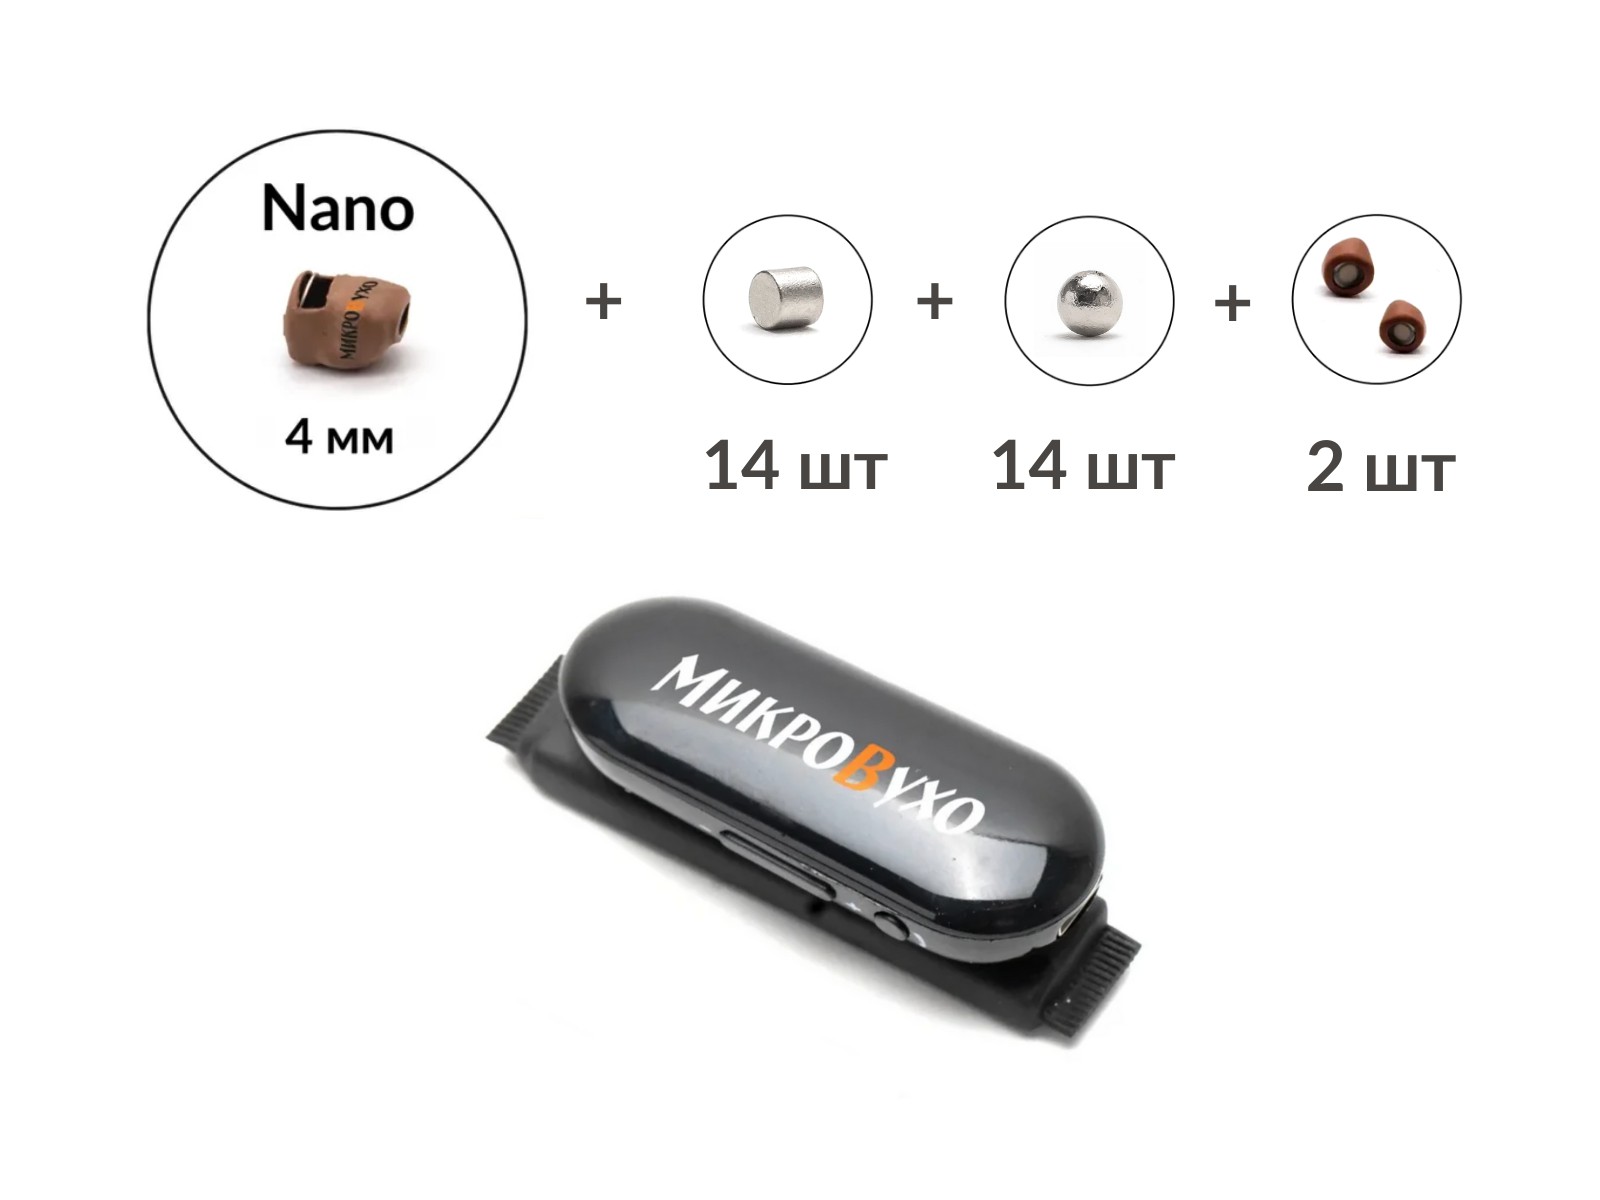 Универсальная гарнитура Bluetooth Box Pro Plus c капсулой Nano 4 мм и магнитами 2 мм - изображение